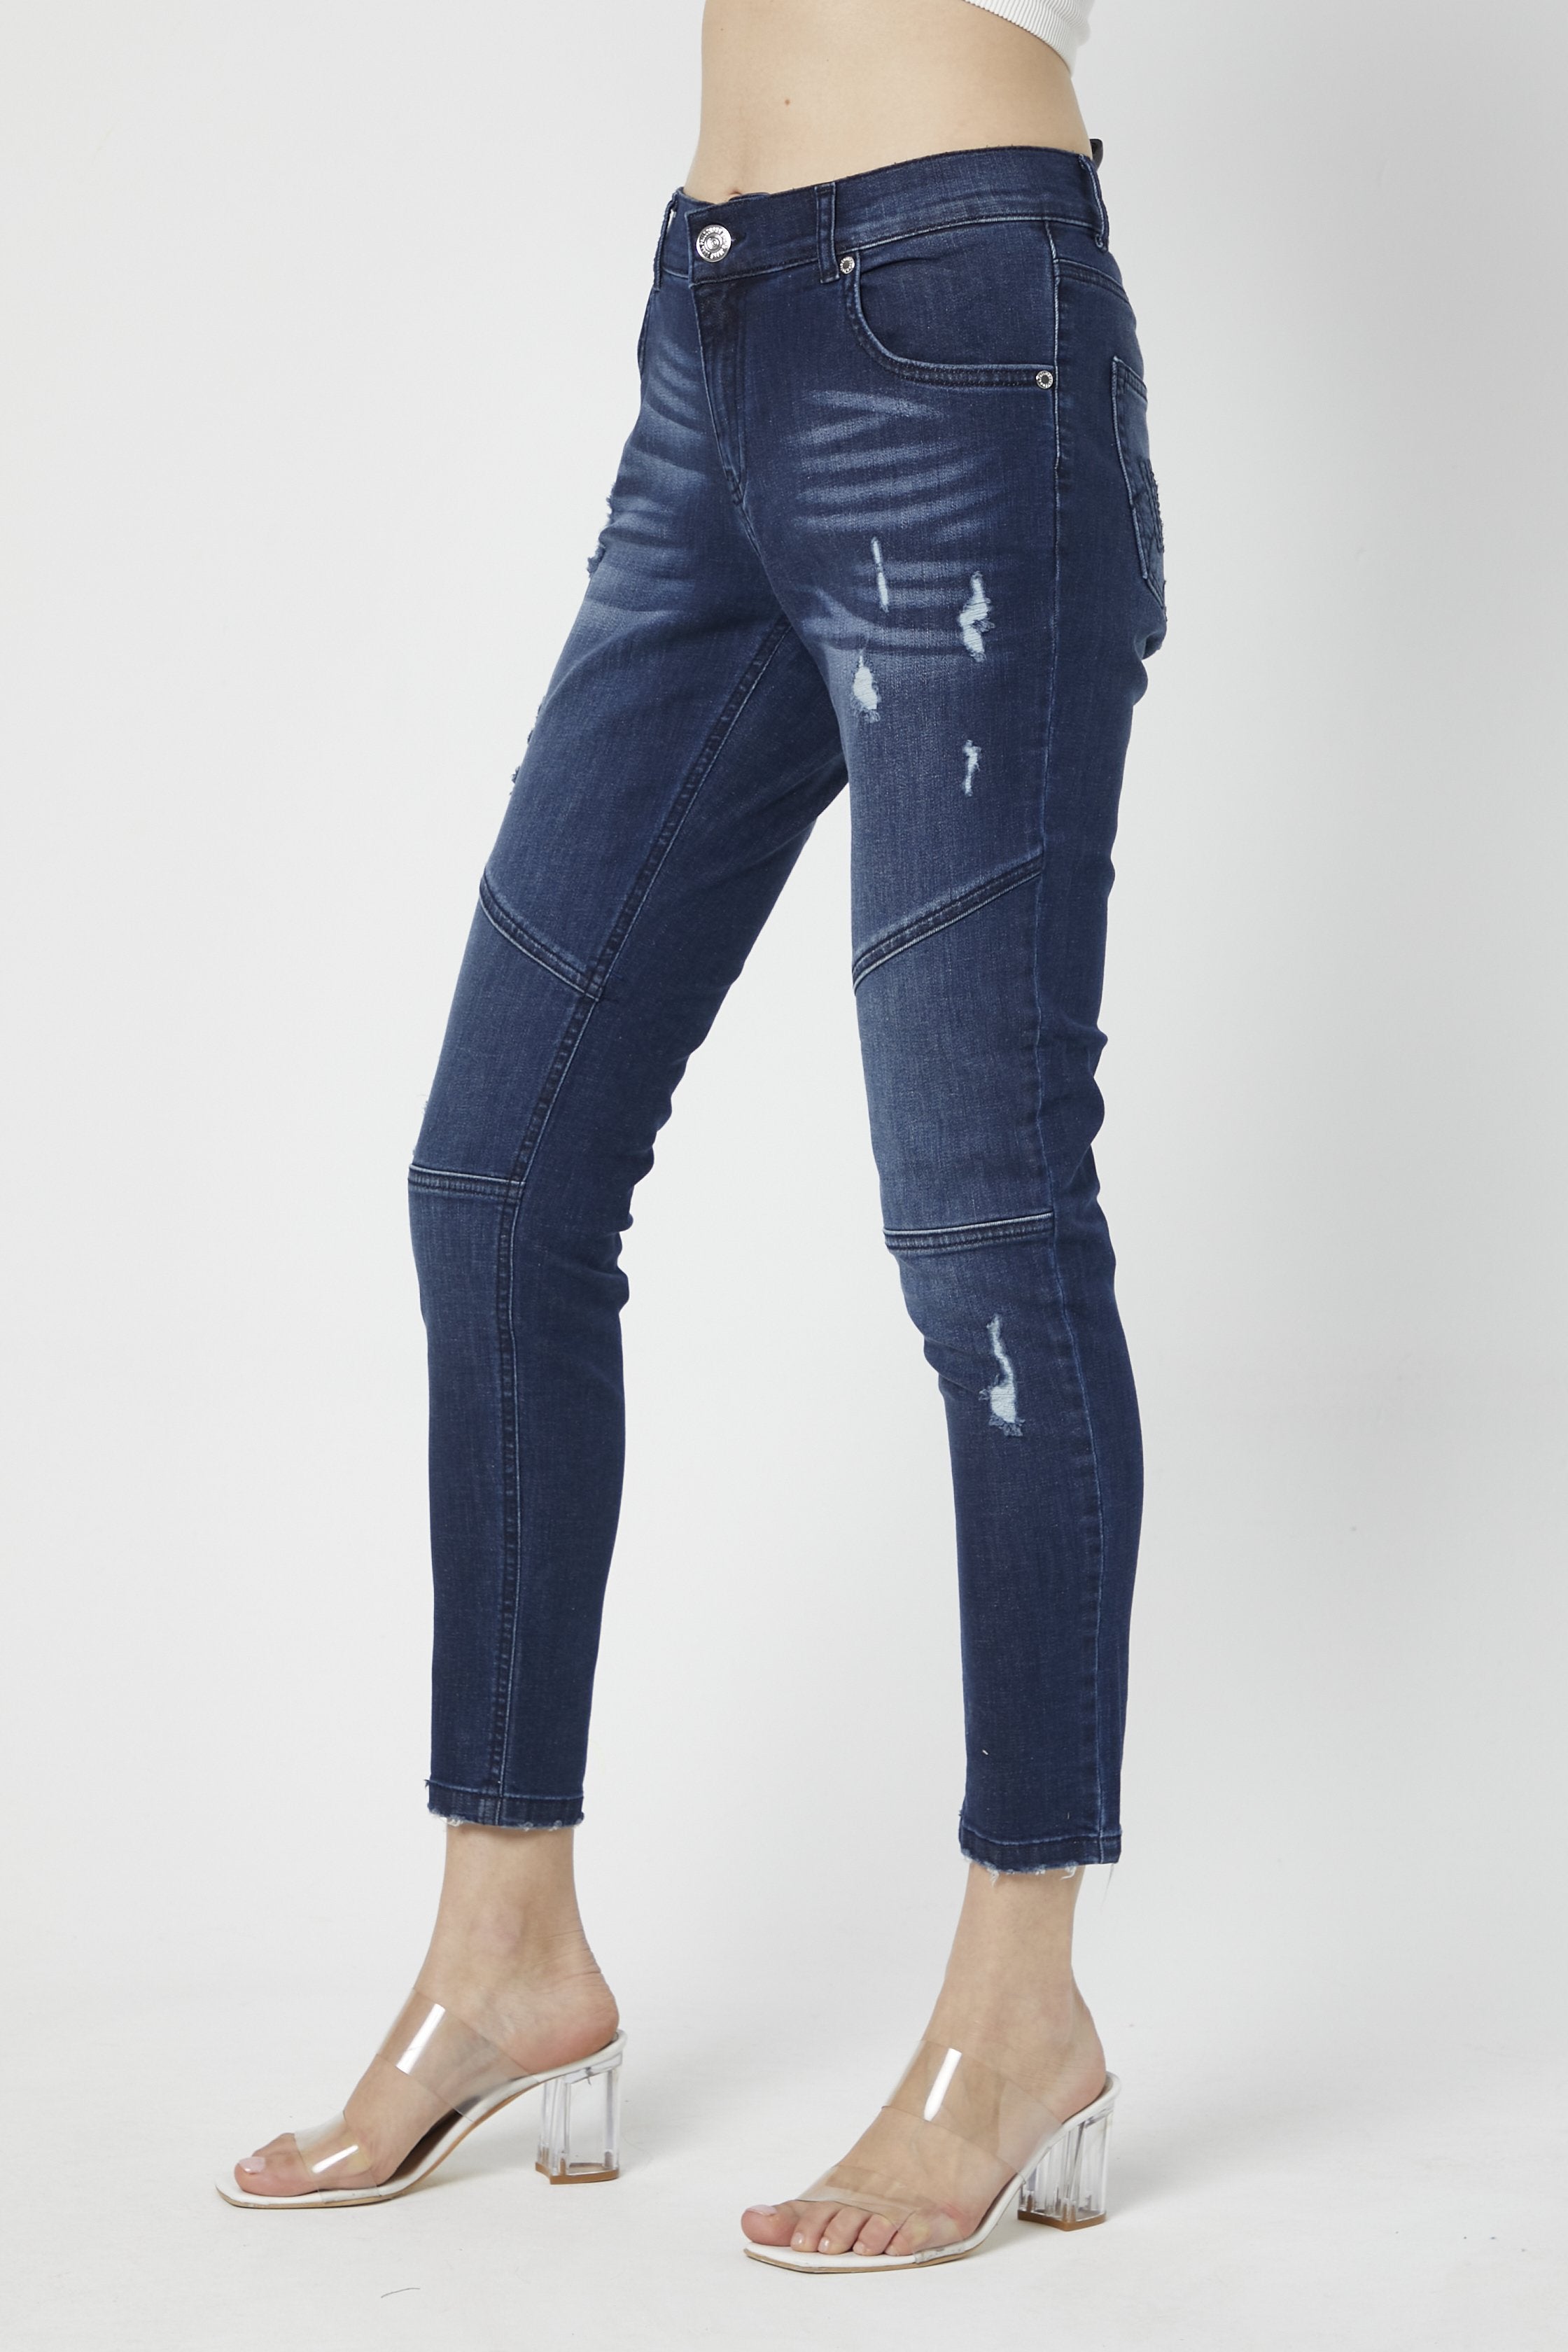 Mid-Waist Dark Blue jeans 4038